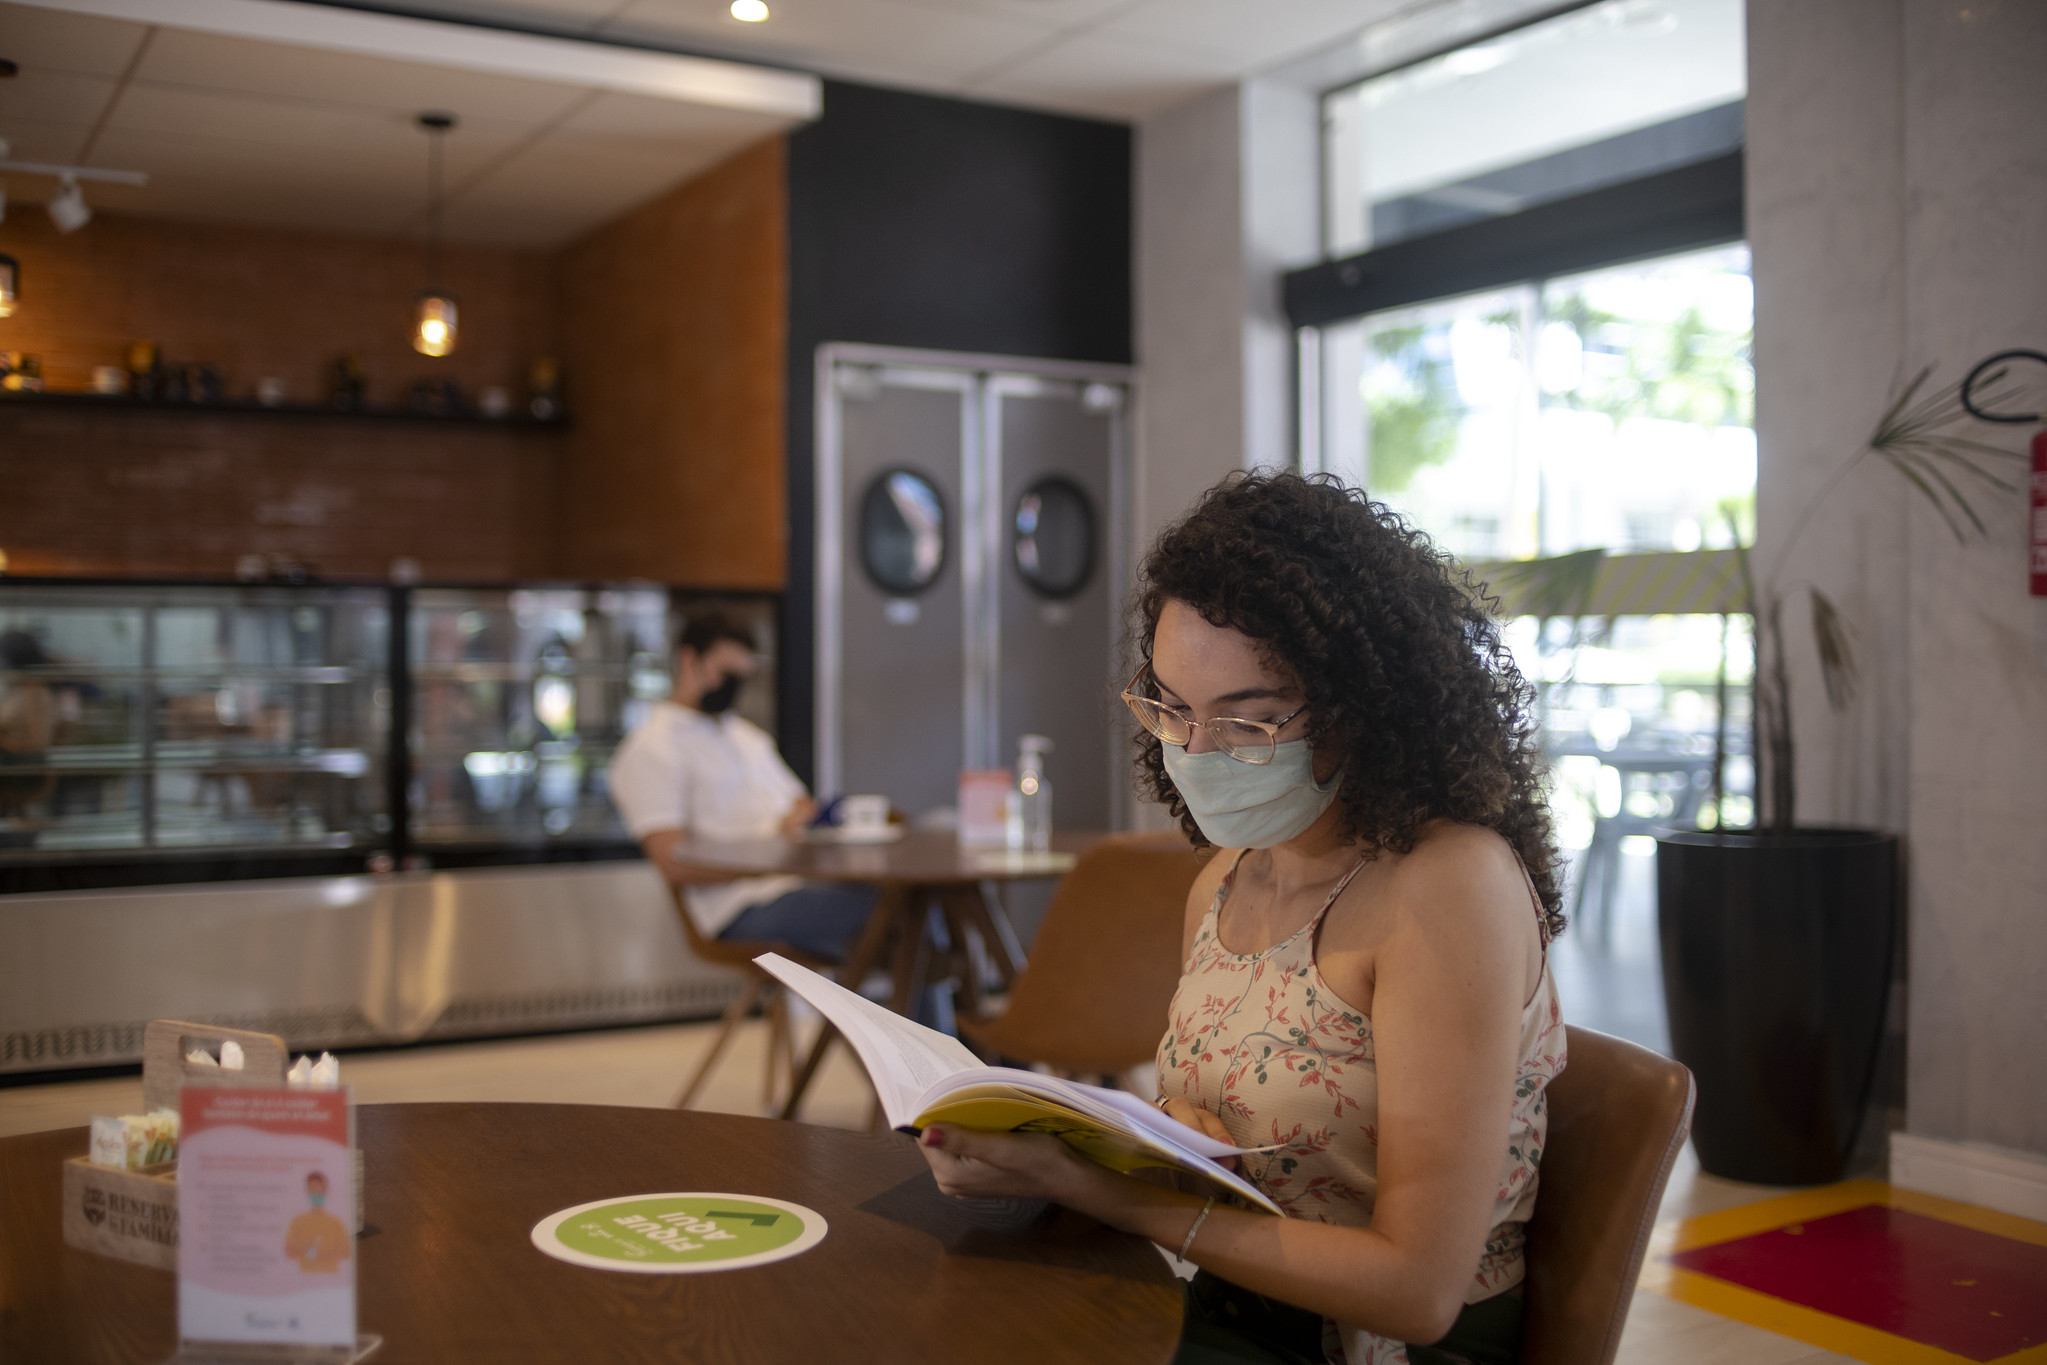 Livraria Senac Ceará: na imagem, uma mulher branca com cabelo cacheado castanho folheia um livro em uma mesa. Ela usa óculos e máscara de proteção.